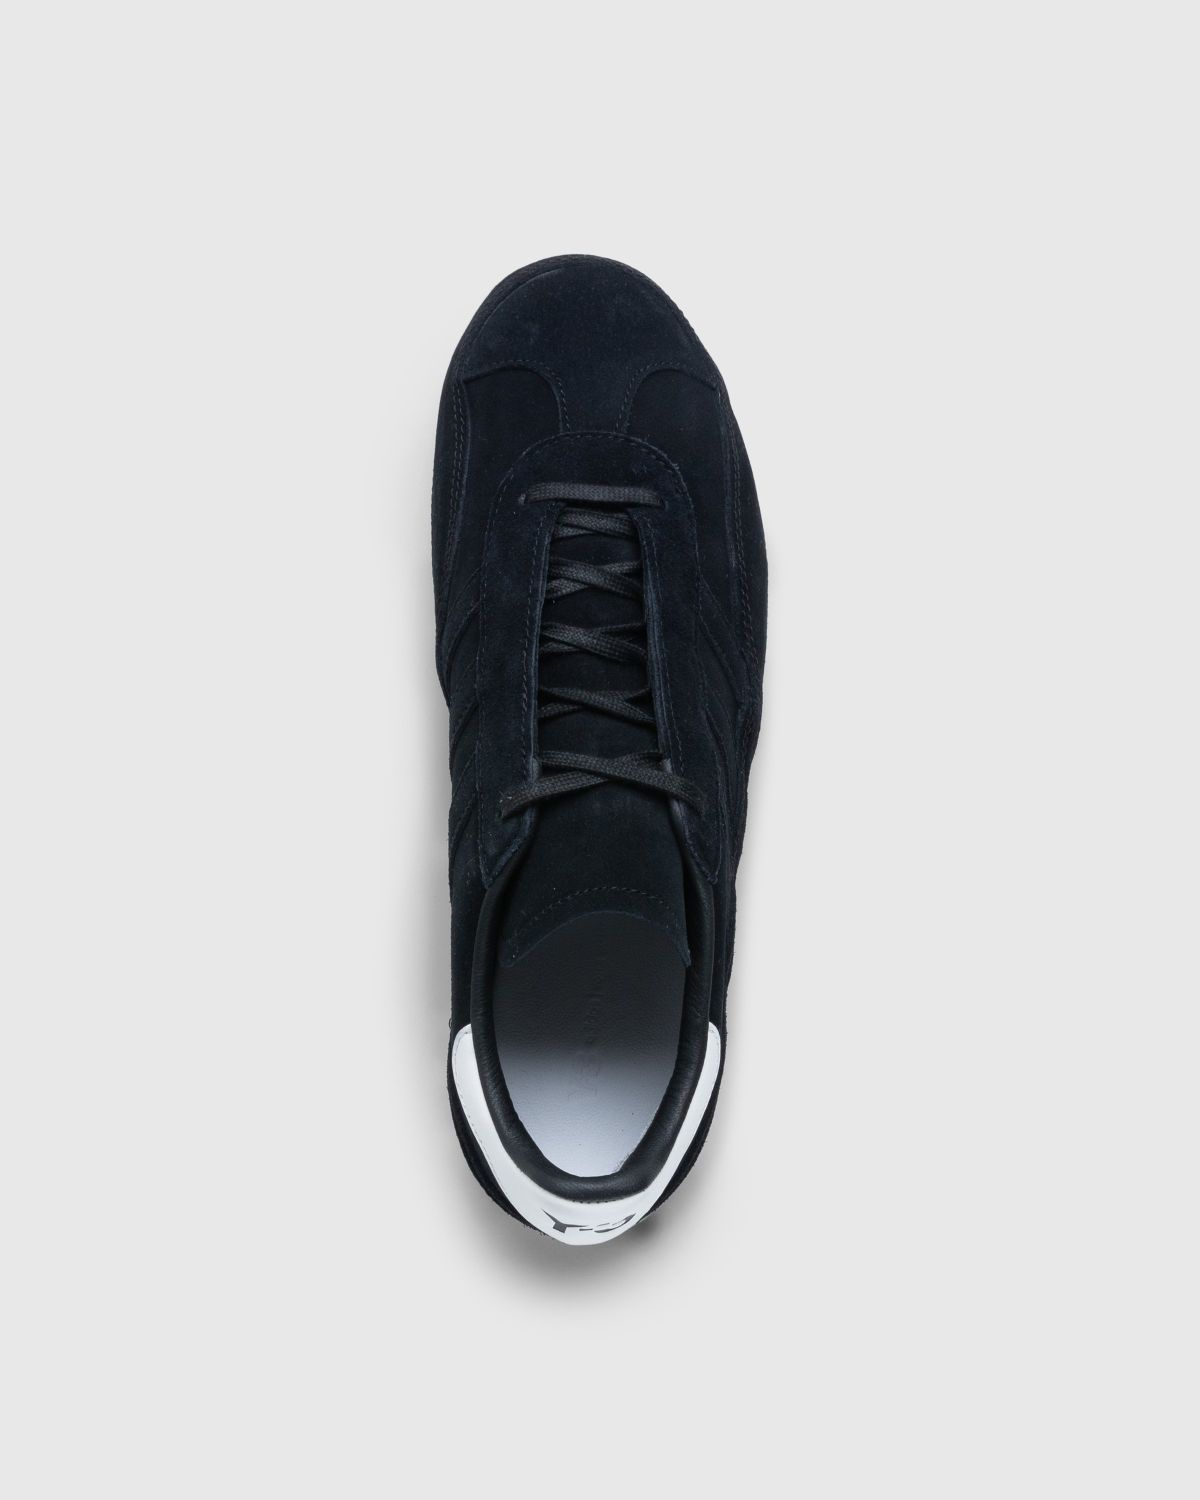 Y-3 – Gazelle Black - Sneakers - Black - Image 5